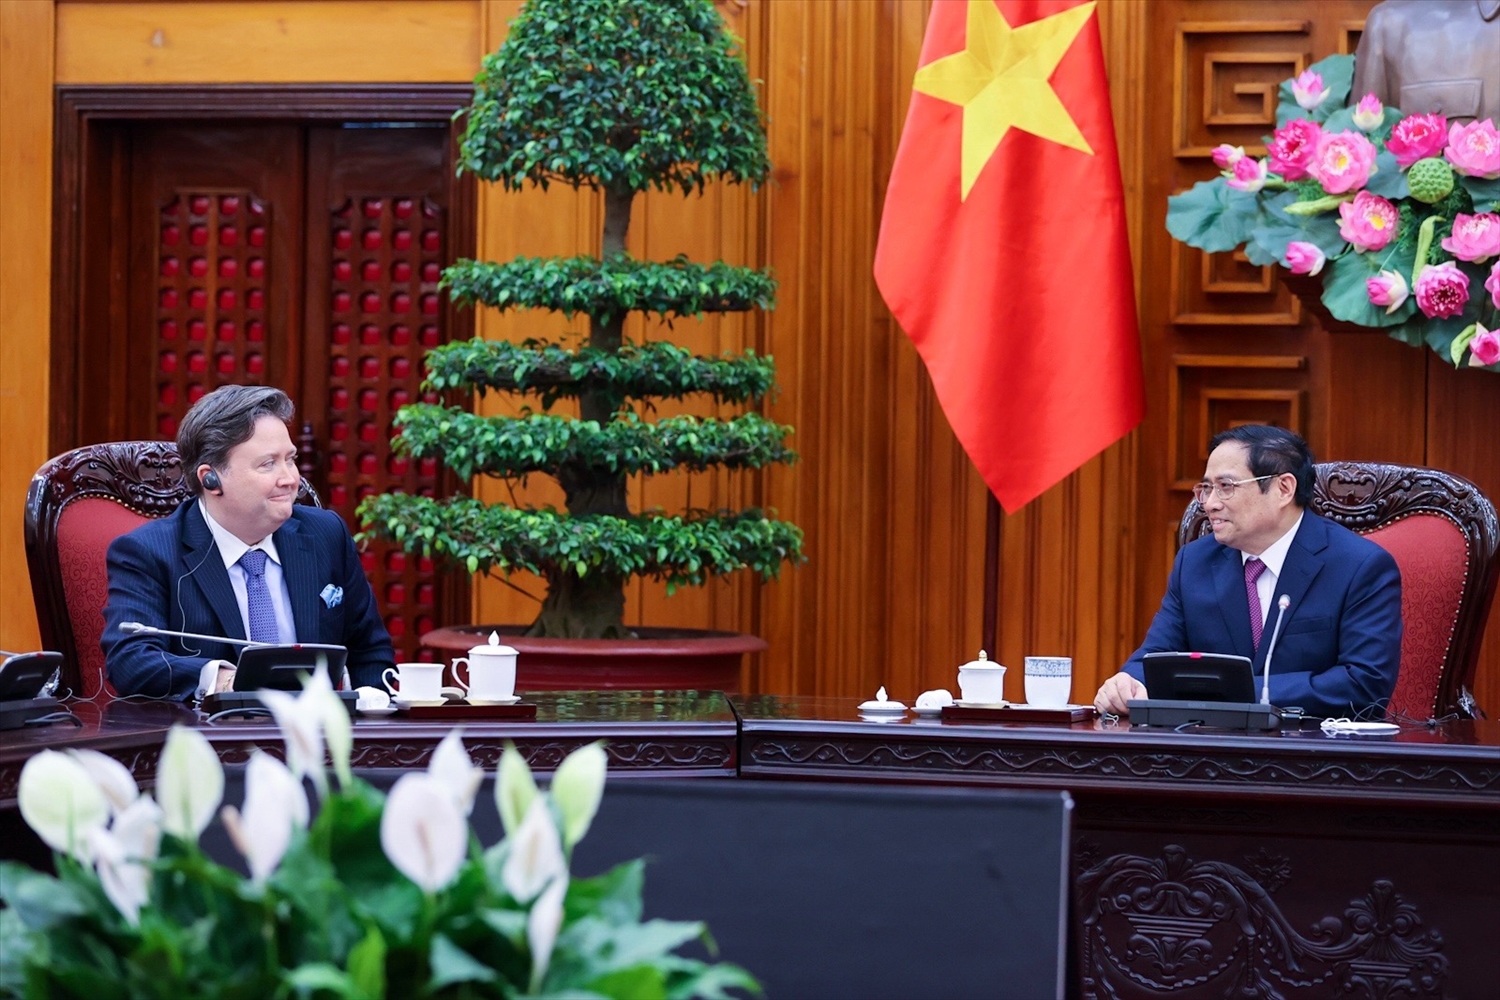 Thủ tướng đánh giá hợp tác khắc phục hậu quả chiến tranh là điểm sáng trong quan hệ Việt Nam - Hoa Kỳ, góp phần tăng cường xây dựng lòng tin giữa hai dân tộc. Ảnh: VGP/Nhật Bắc